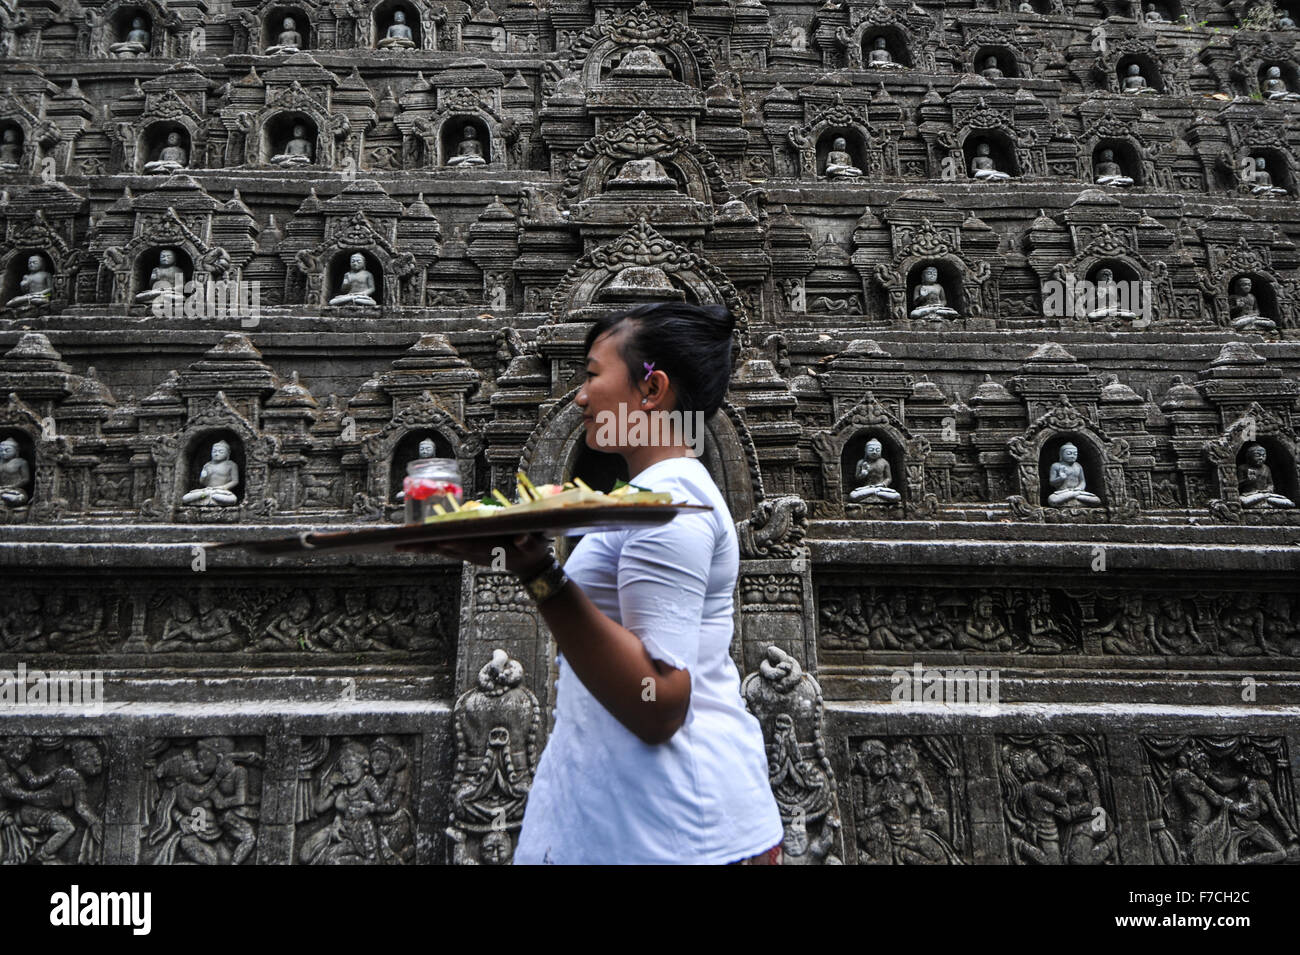 Bali, Indonésie. 29 Nov, 2015. Une femme marche dernières réplique de Borobudur Temple sculpté sur la falaise au mur, Ayung resort Ubud, Bali, Indonésie, le 29 novembre 2015. Ubud est l'un des secteurs touristiques de Bali célèbre pour sa culture et son paysage naturel. © Sanovri Veri/Xinhua/Alamy Live News Banque D'Images